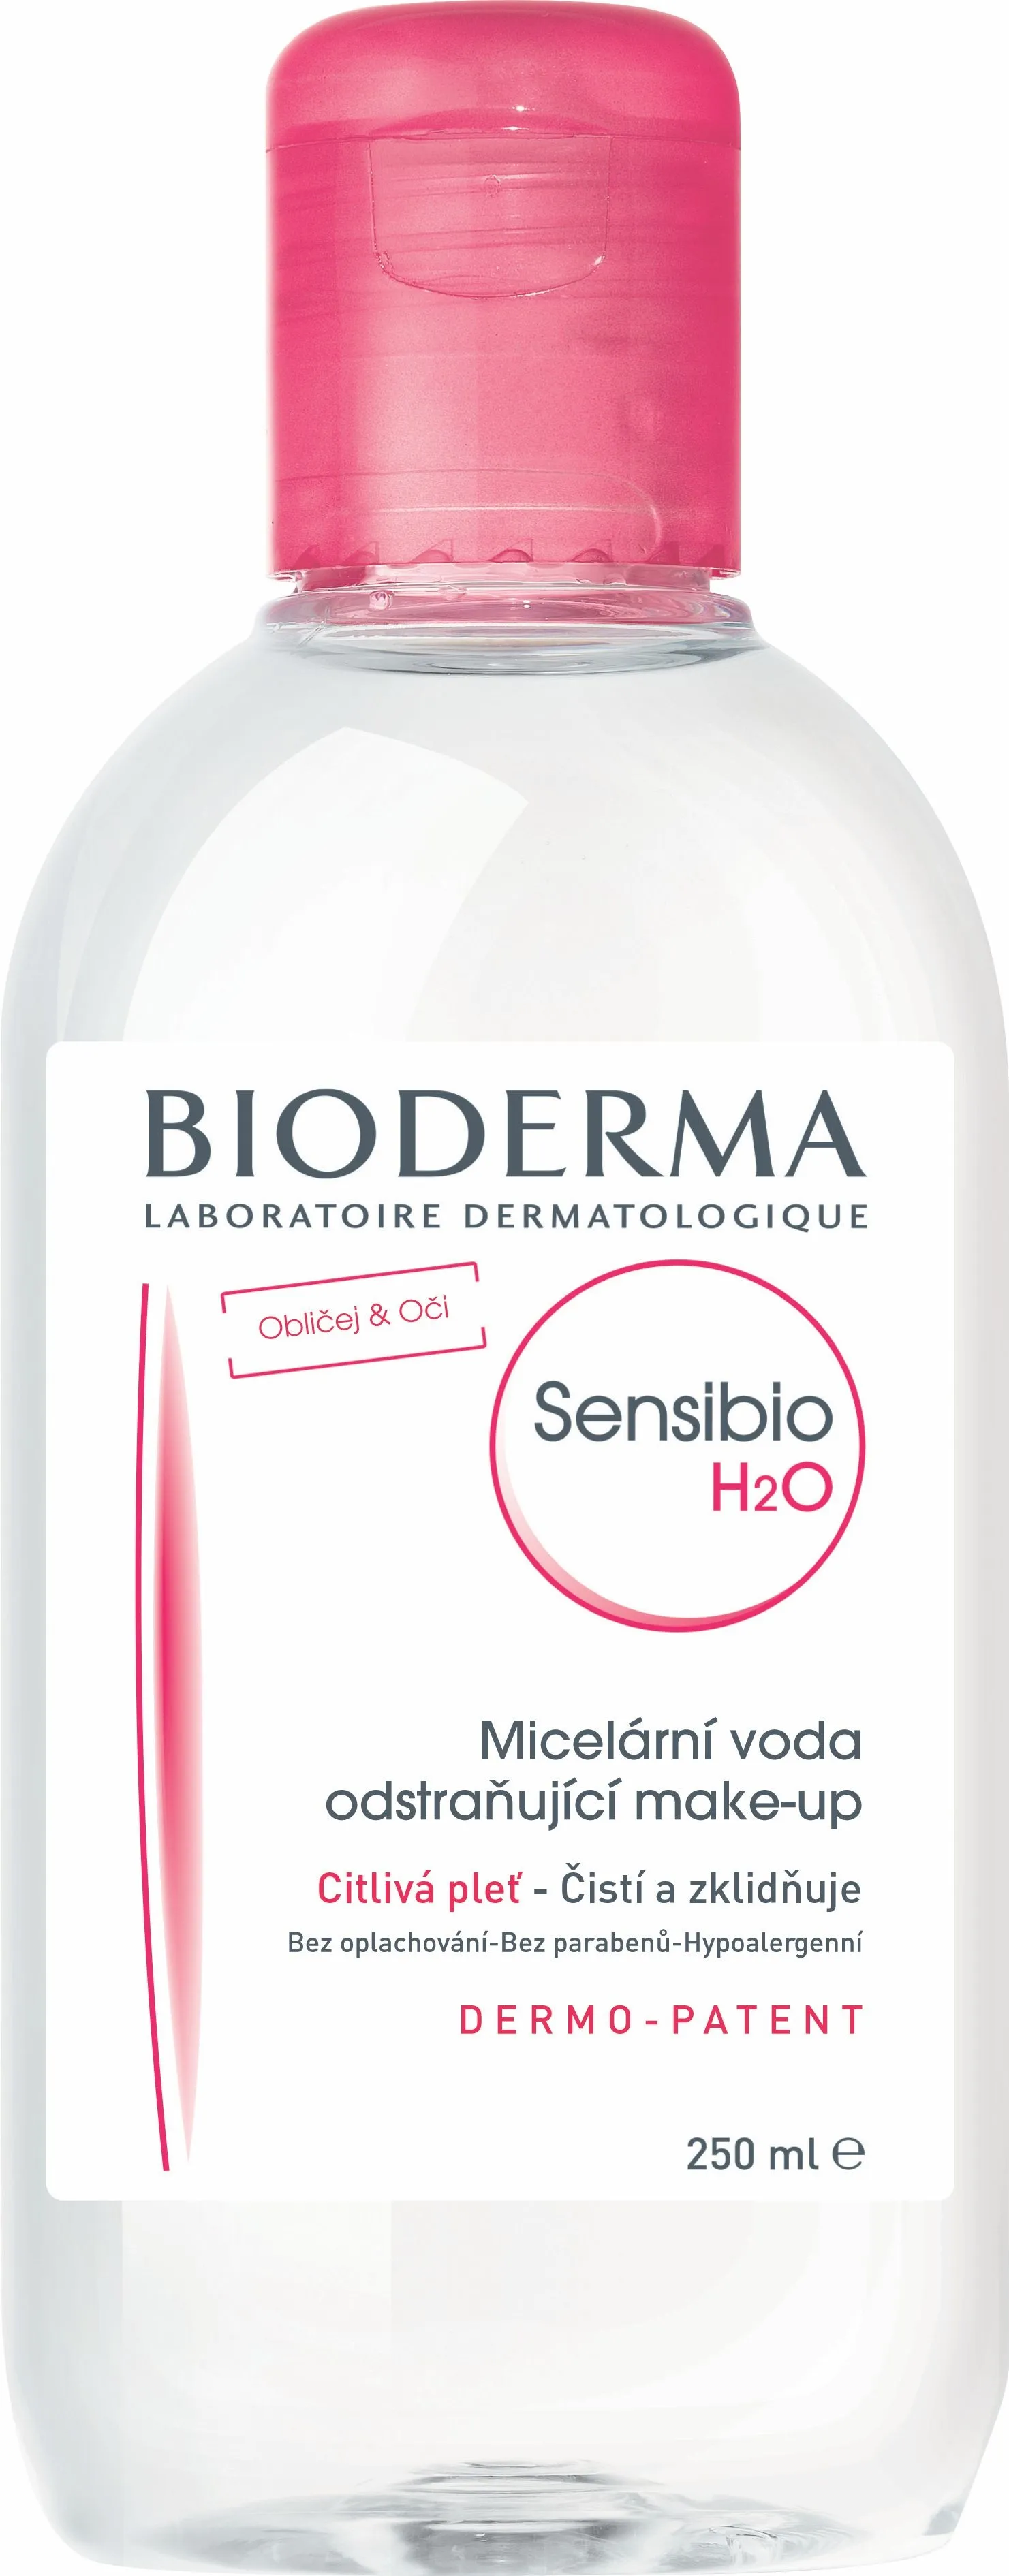 BIODERMA Sensibio H2O čisticí micelární voda 250 ml